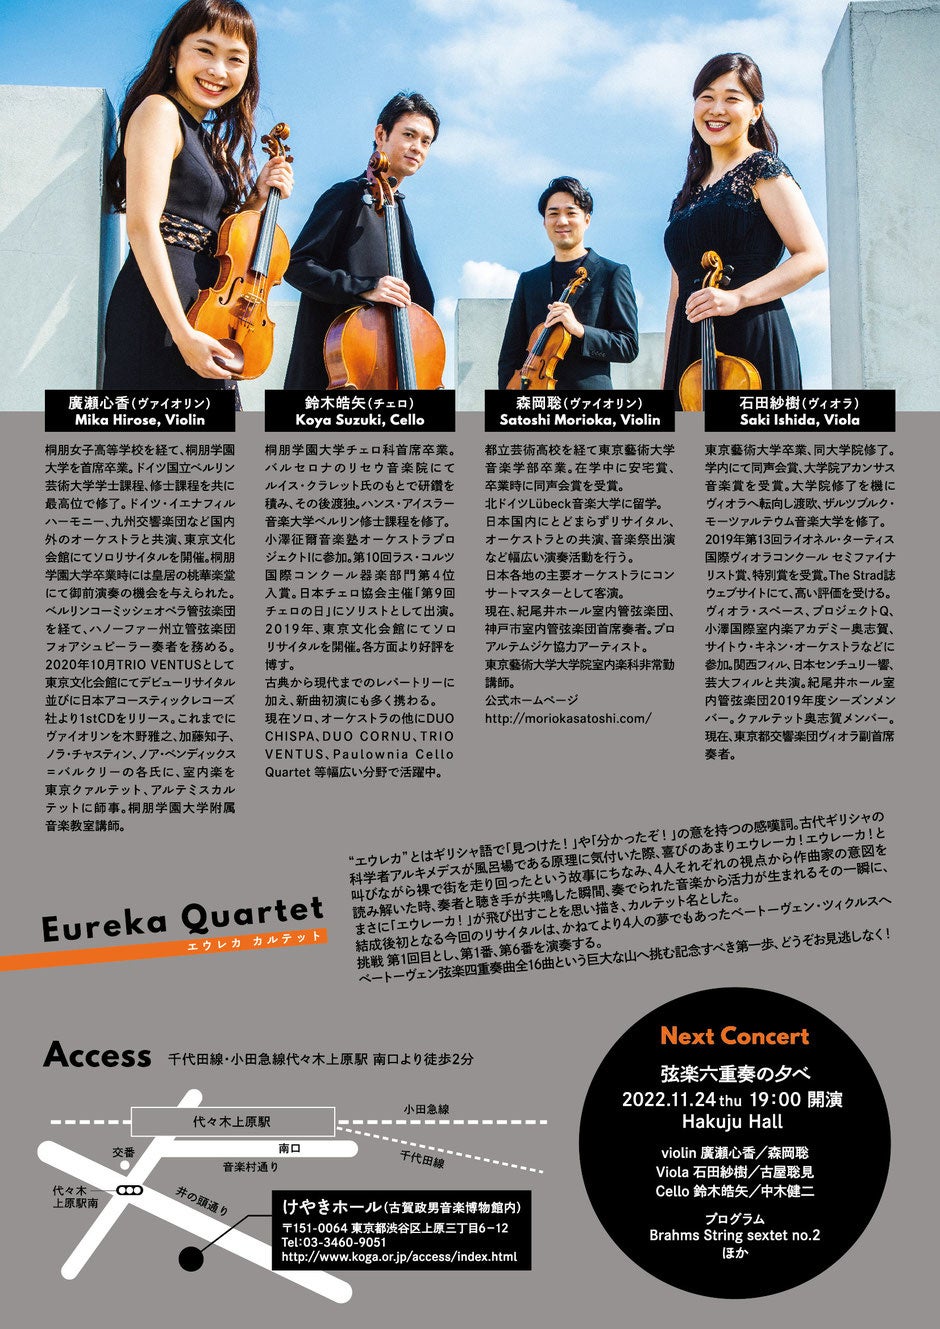 エネルギッシュで個性溢れる演奏スタイルが魅力の４名の弦楽奏者 『エウレカカルテット』、6月23日にデビュー公演を開催のサブ画像11